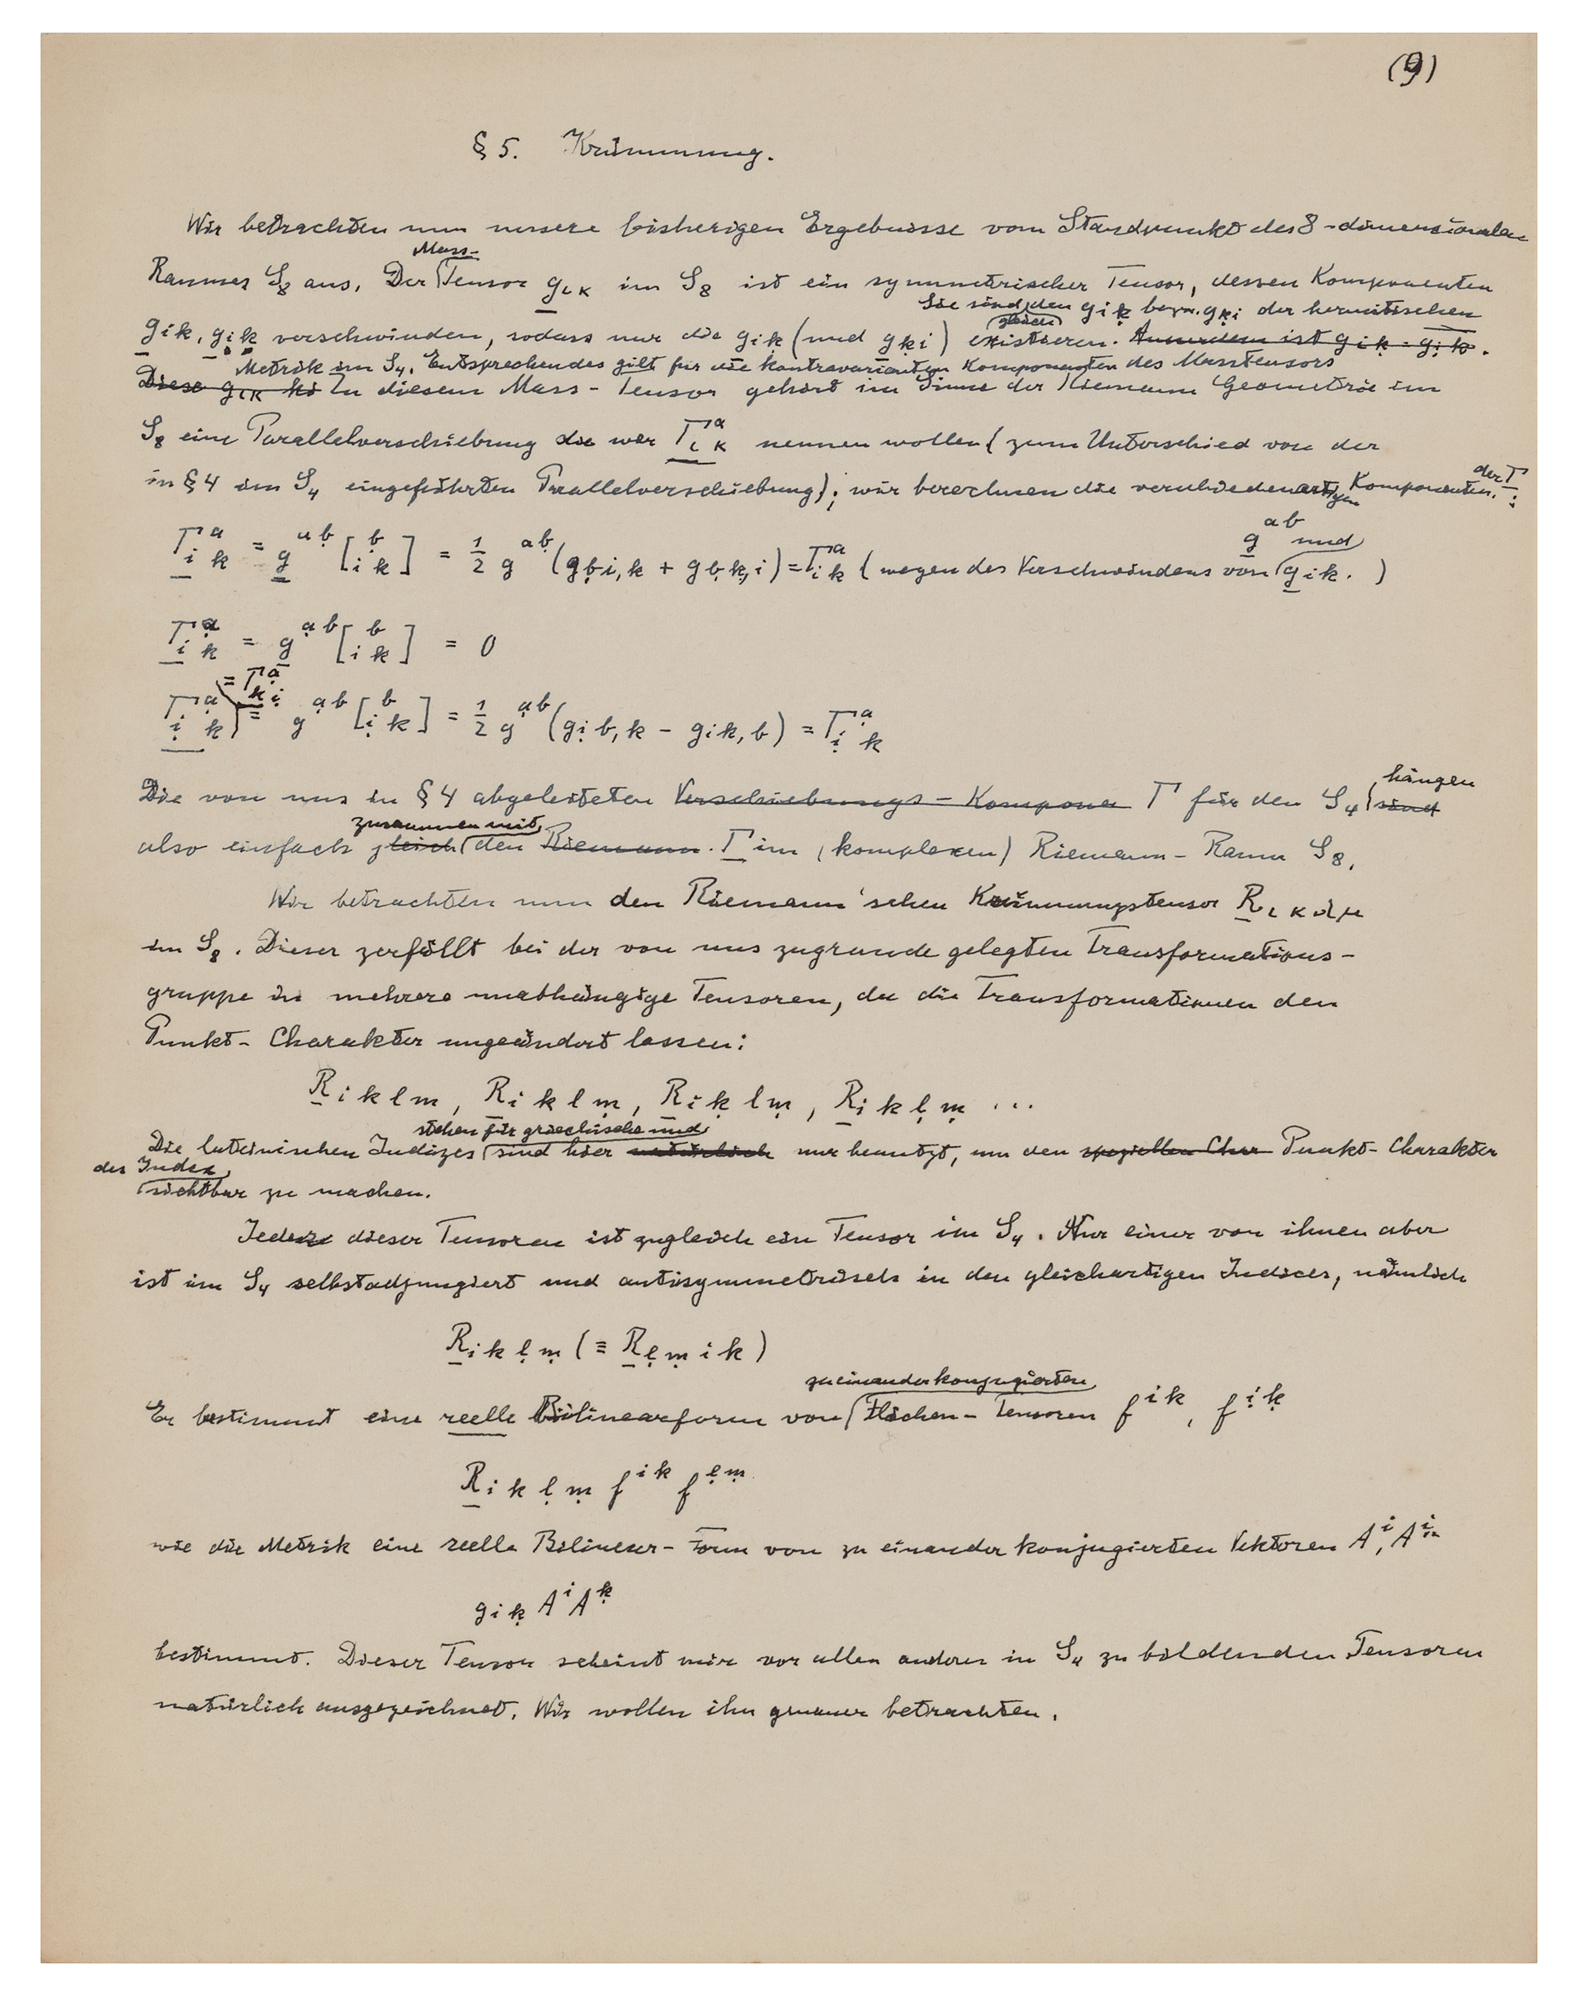 Lot #192 Albert Einstein Handwritten Scientific Manuscript